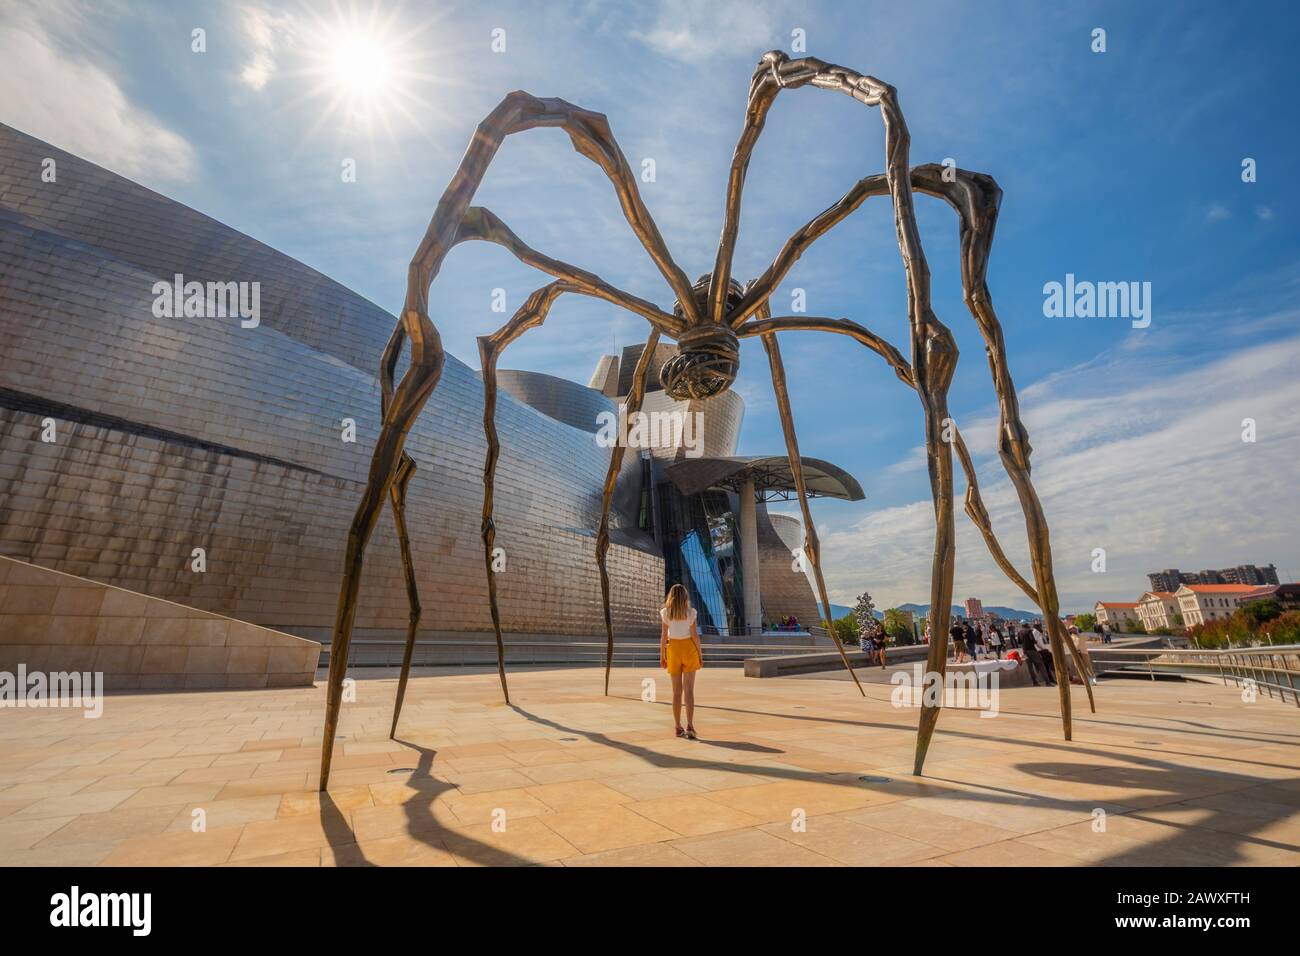 Femme se tient sous une sculpture d'une araignée géante au musée Guggenheim, Bilbao, Pays basque, Espagne, péninsule ibérique, Europe occidentale Banque D'Images